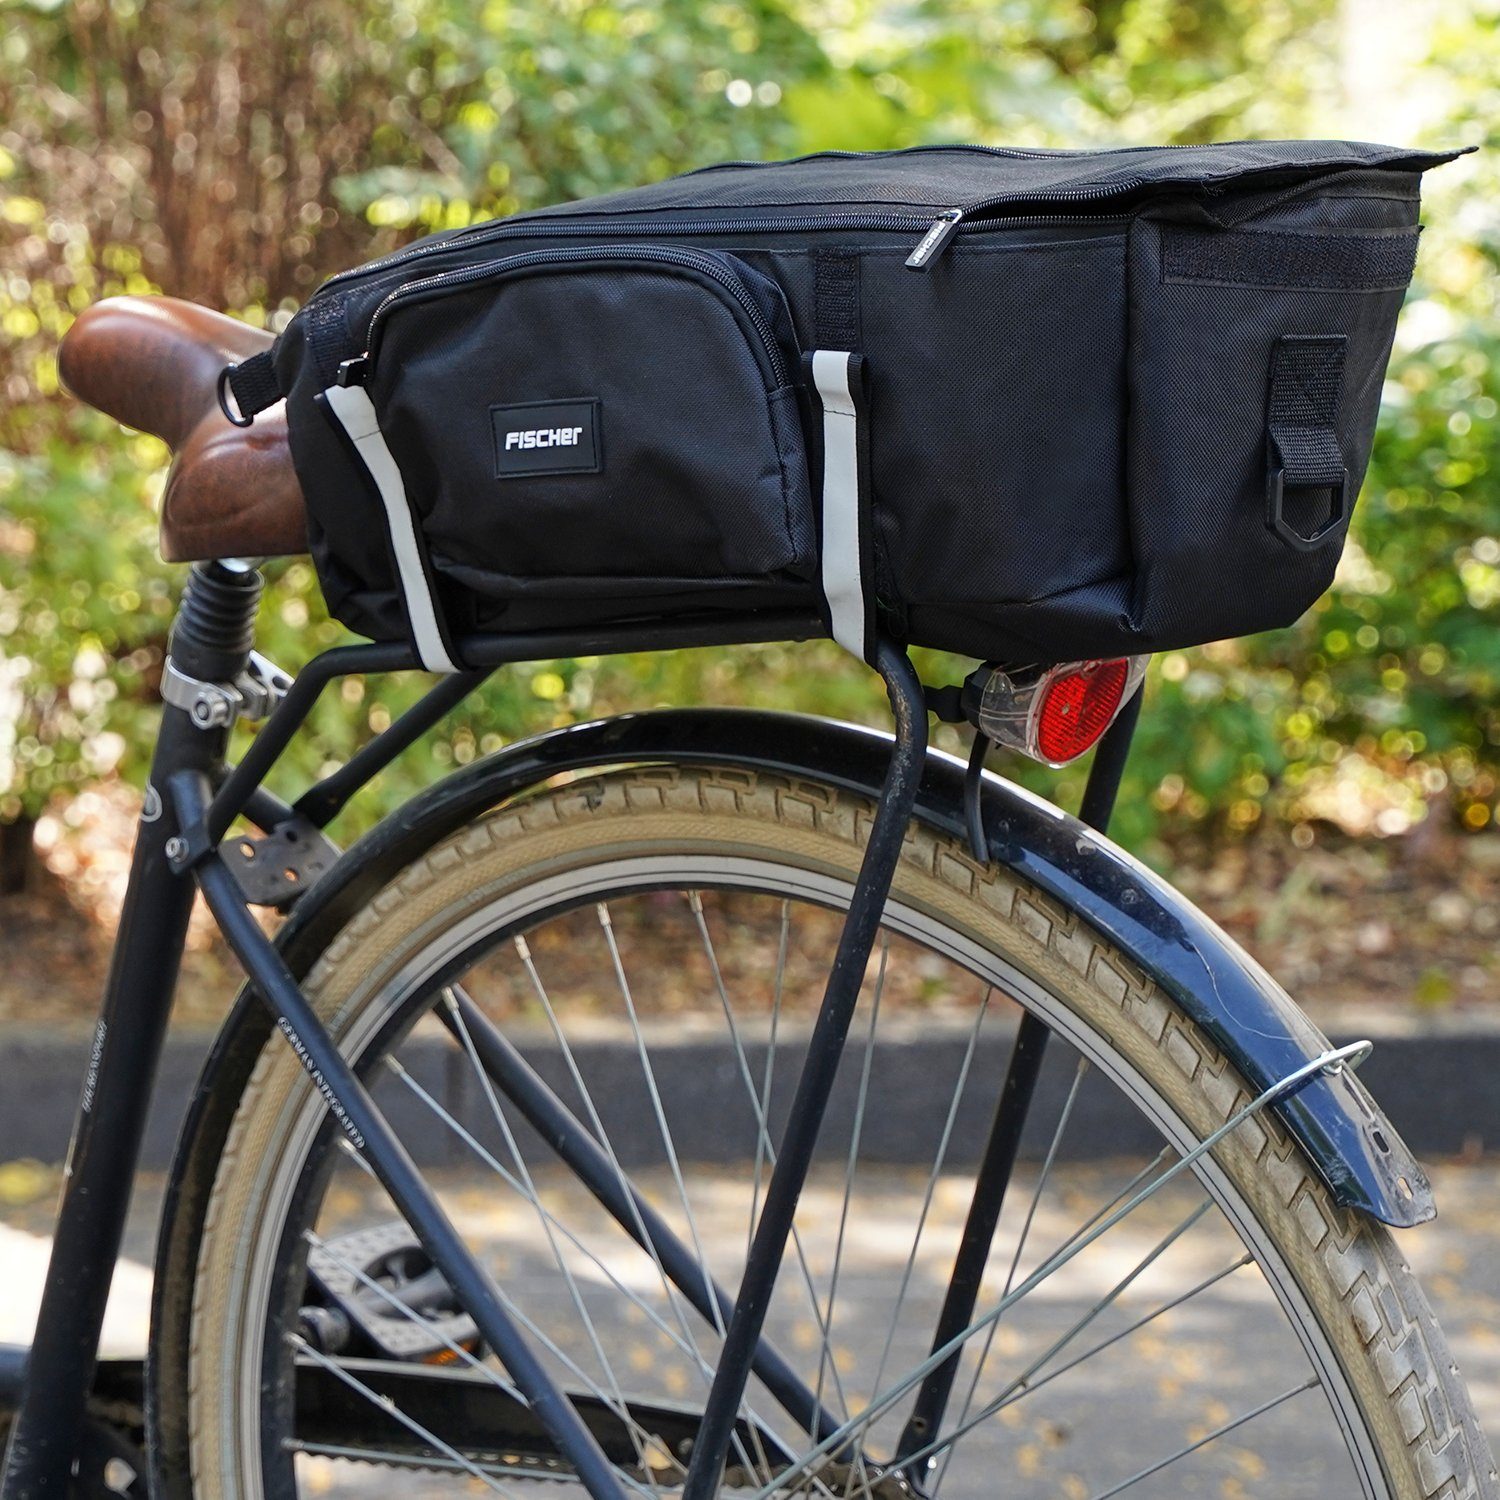 fischer Gepäckträgertasche Gepäckträger-Tasche Sport Fahrrad-Tasche, Bike  Case wasserabweisend, Fahrrad-Tasche mit Volumen 8,5L, einfache Befestigung  am Gepäckträger per Klettverschluss, auch für E-Bike geeignet